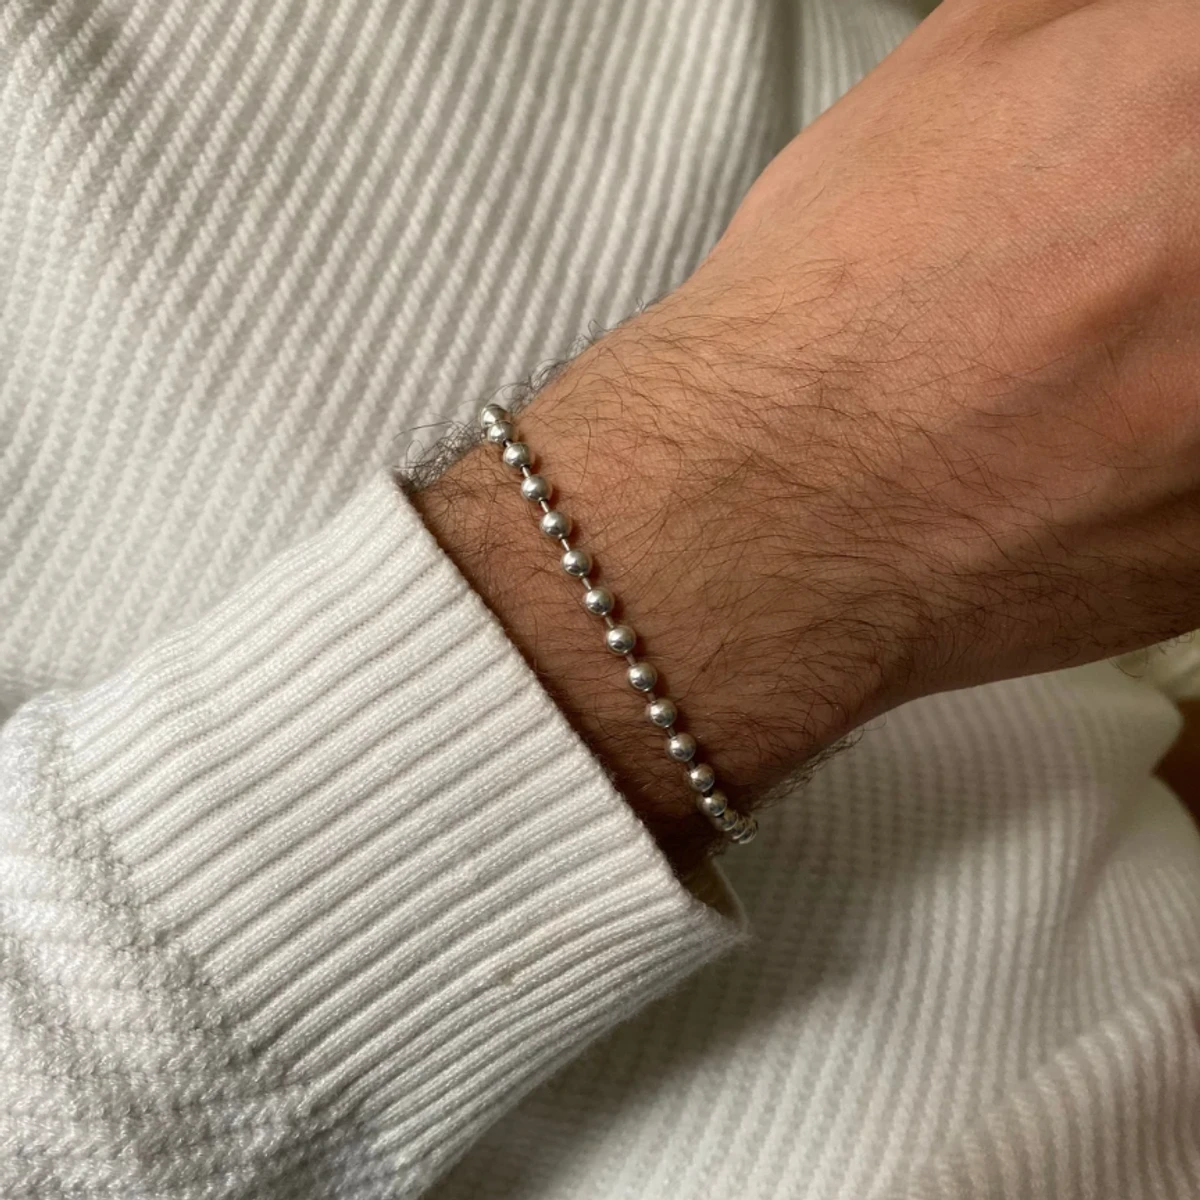 Fashionable Ball Chain Bracelet For Men & Women